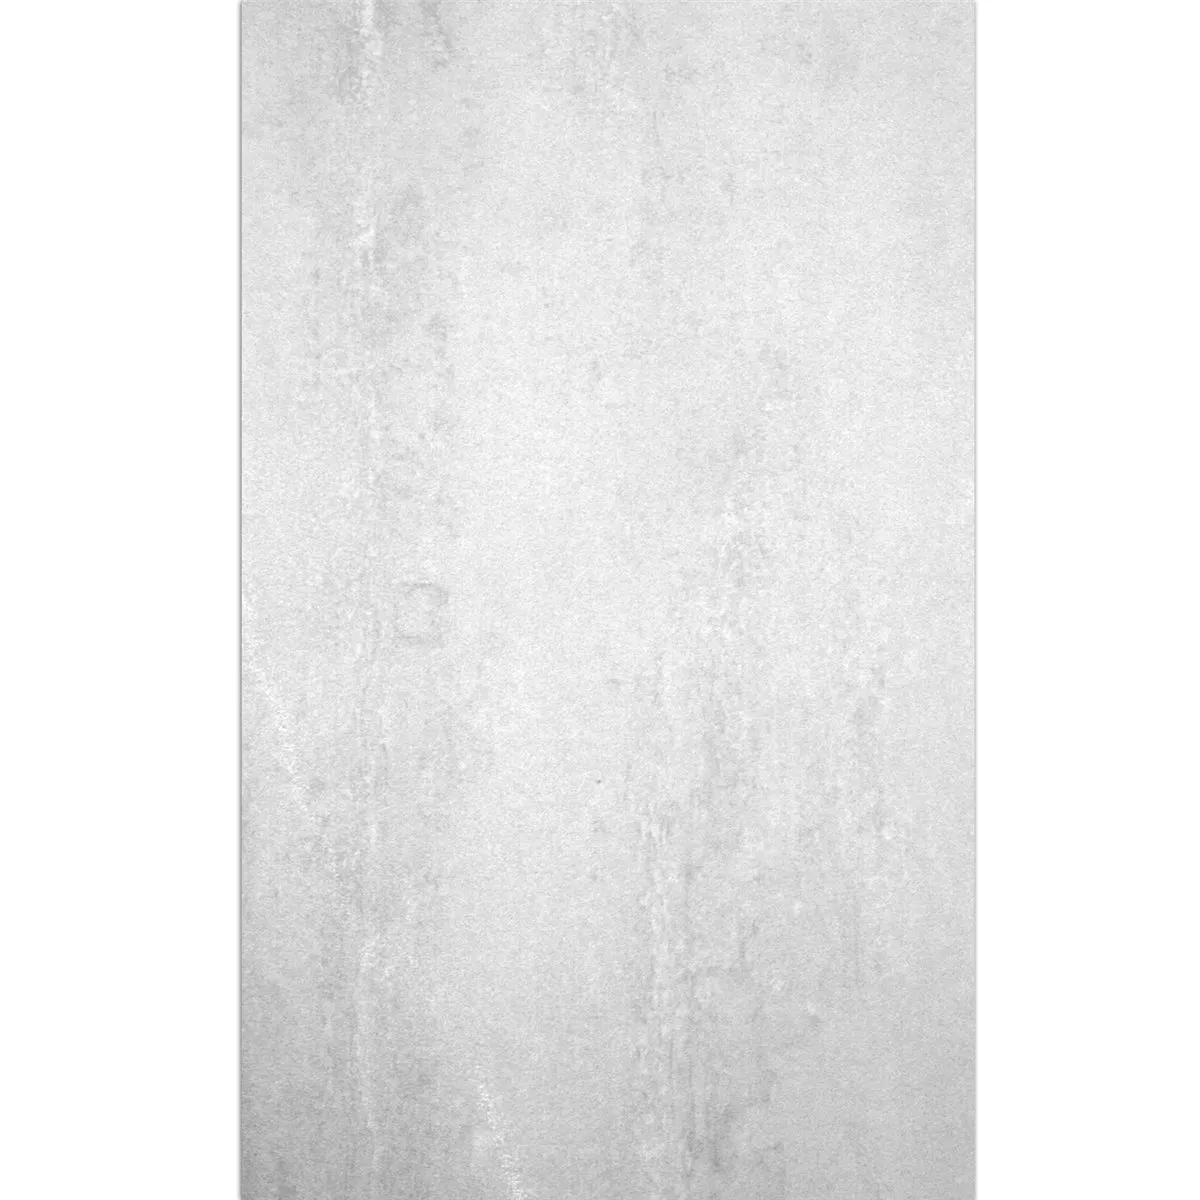 Muster Bodenfliesen Madeira Weiss Anpoliert 60x120cm